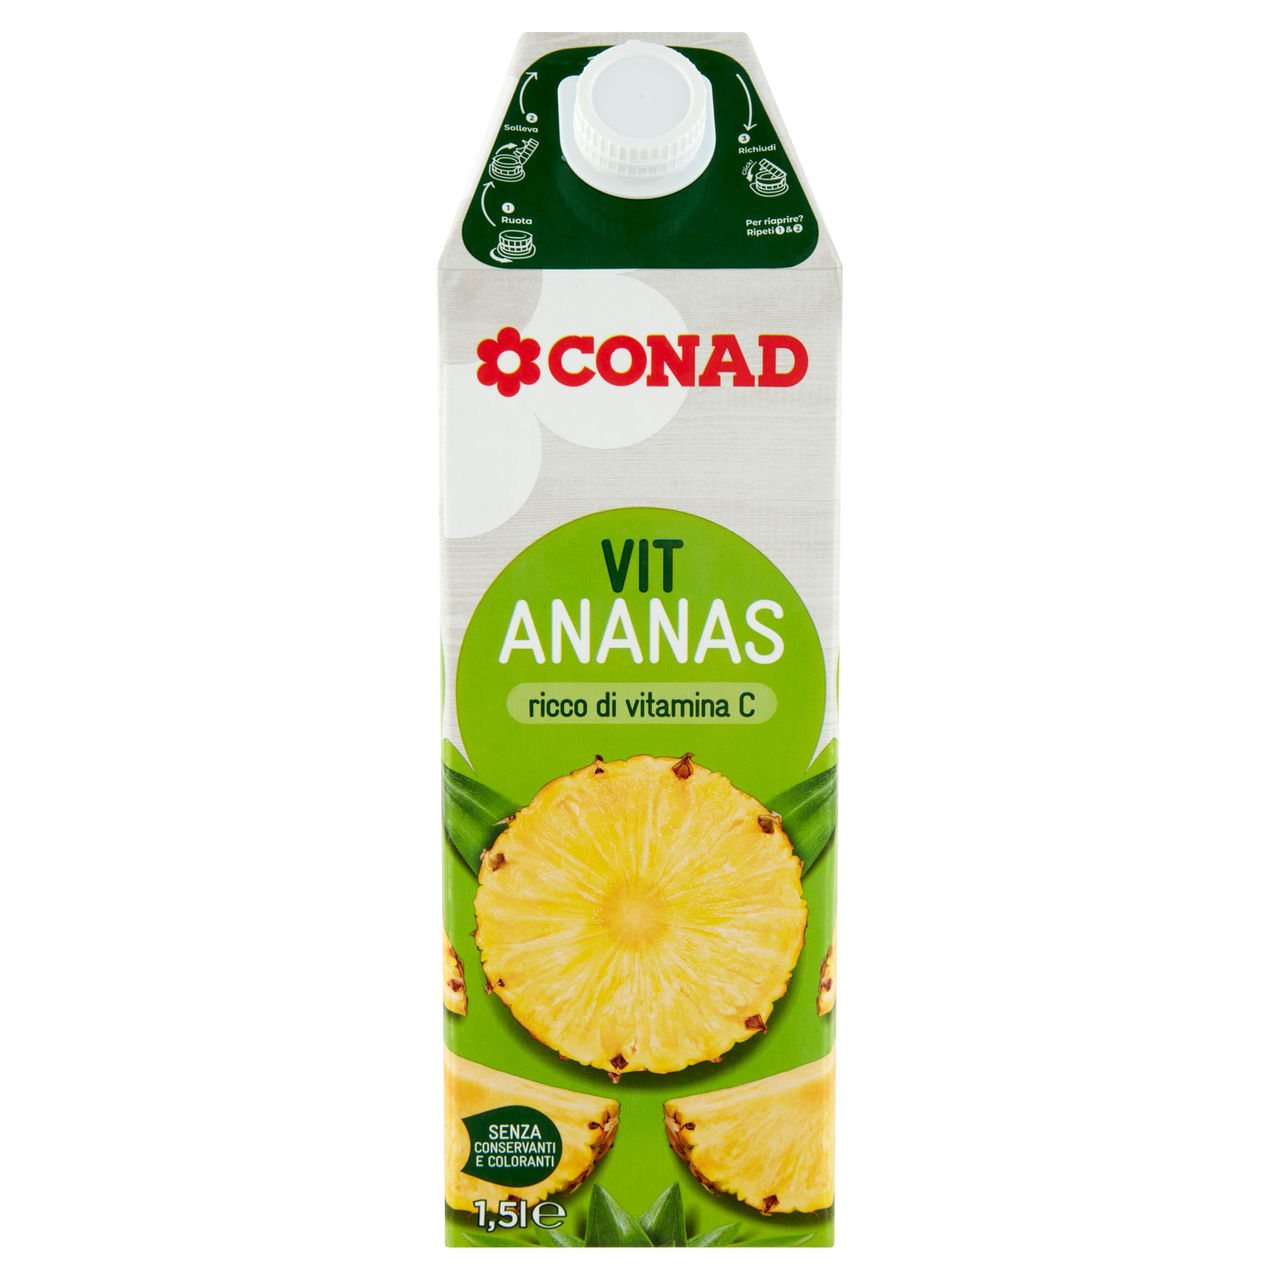 Vit Ananas 1,5 l Conad in vendita online